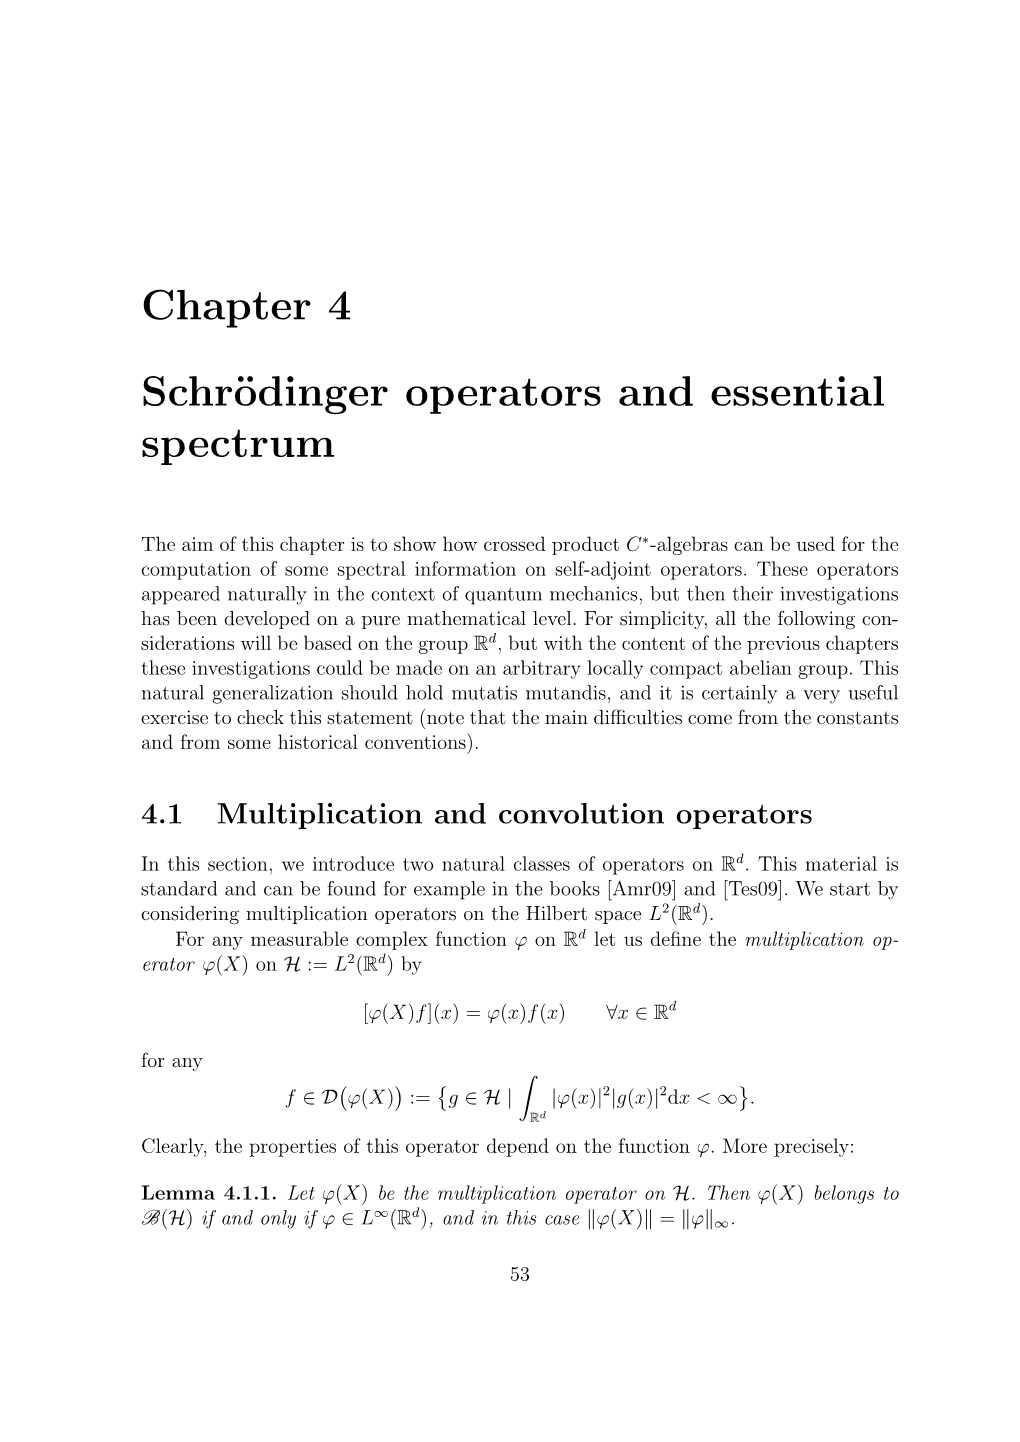 Chapter 4 Schrödinger Operators and Essential Spectrum